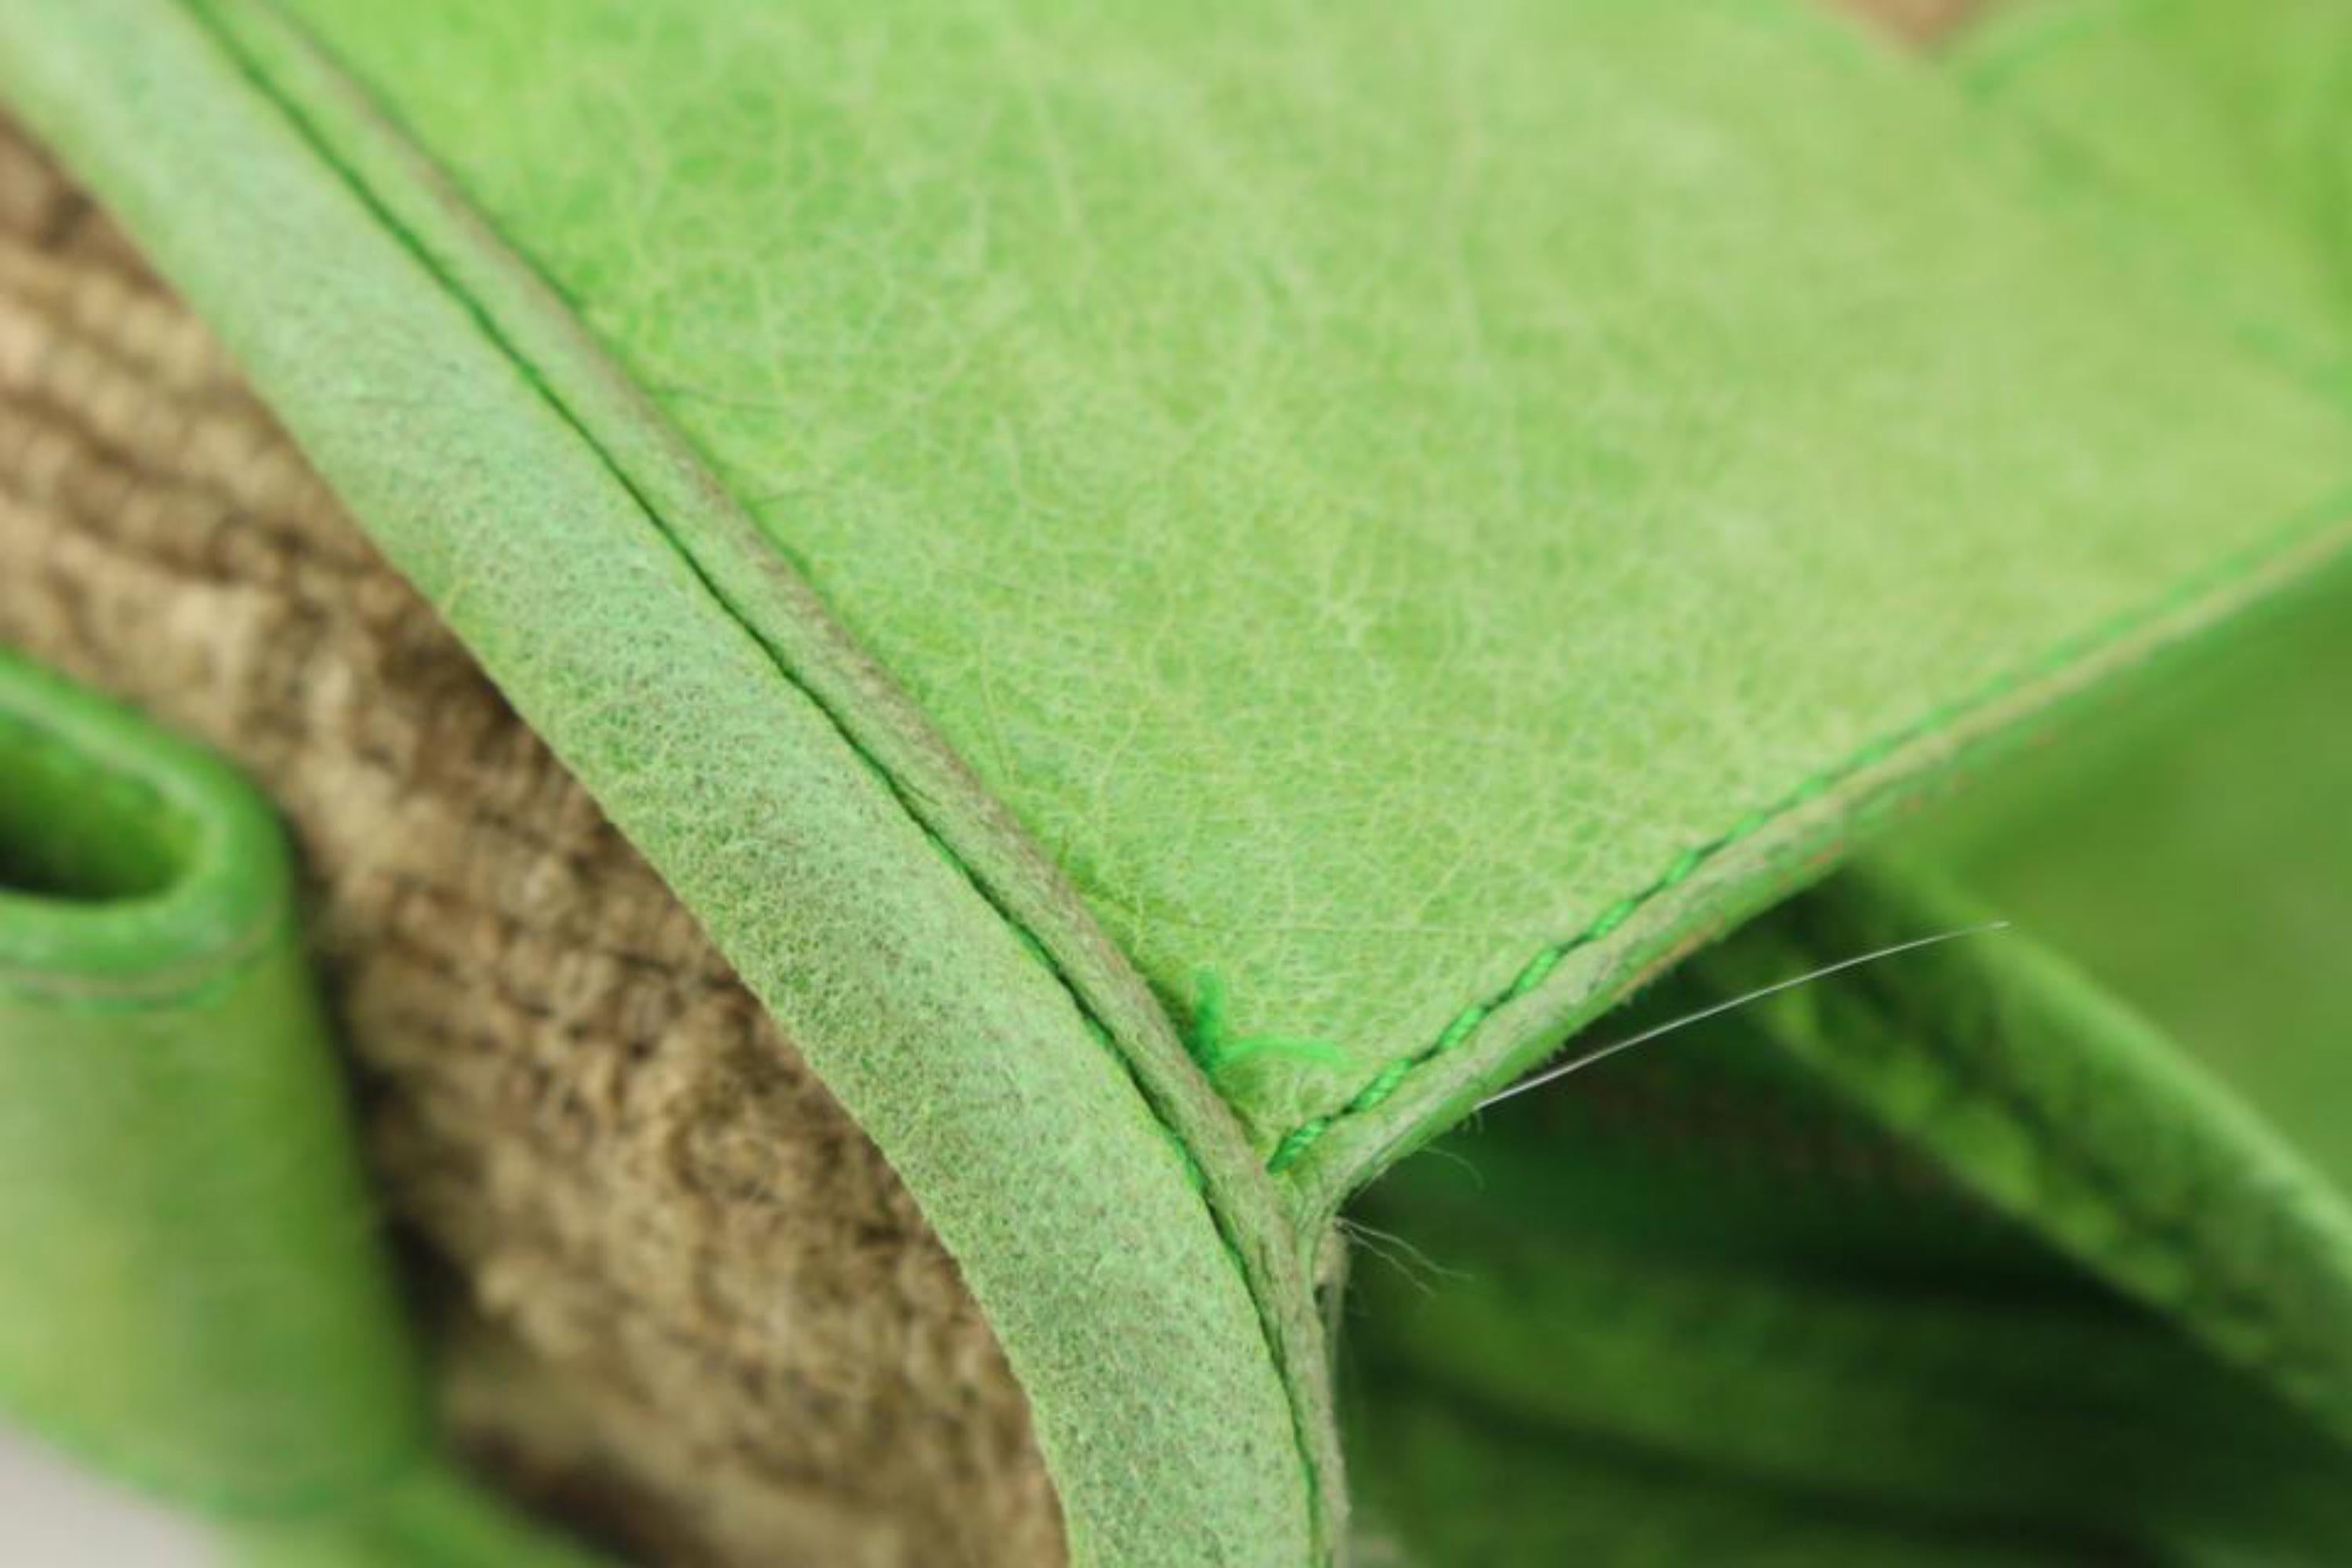 balenciaga green bag